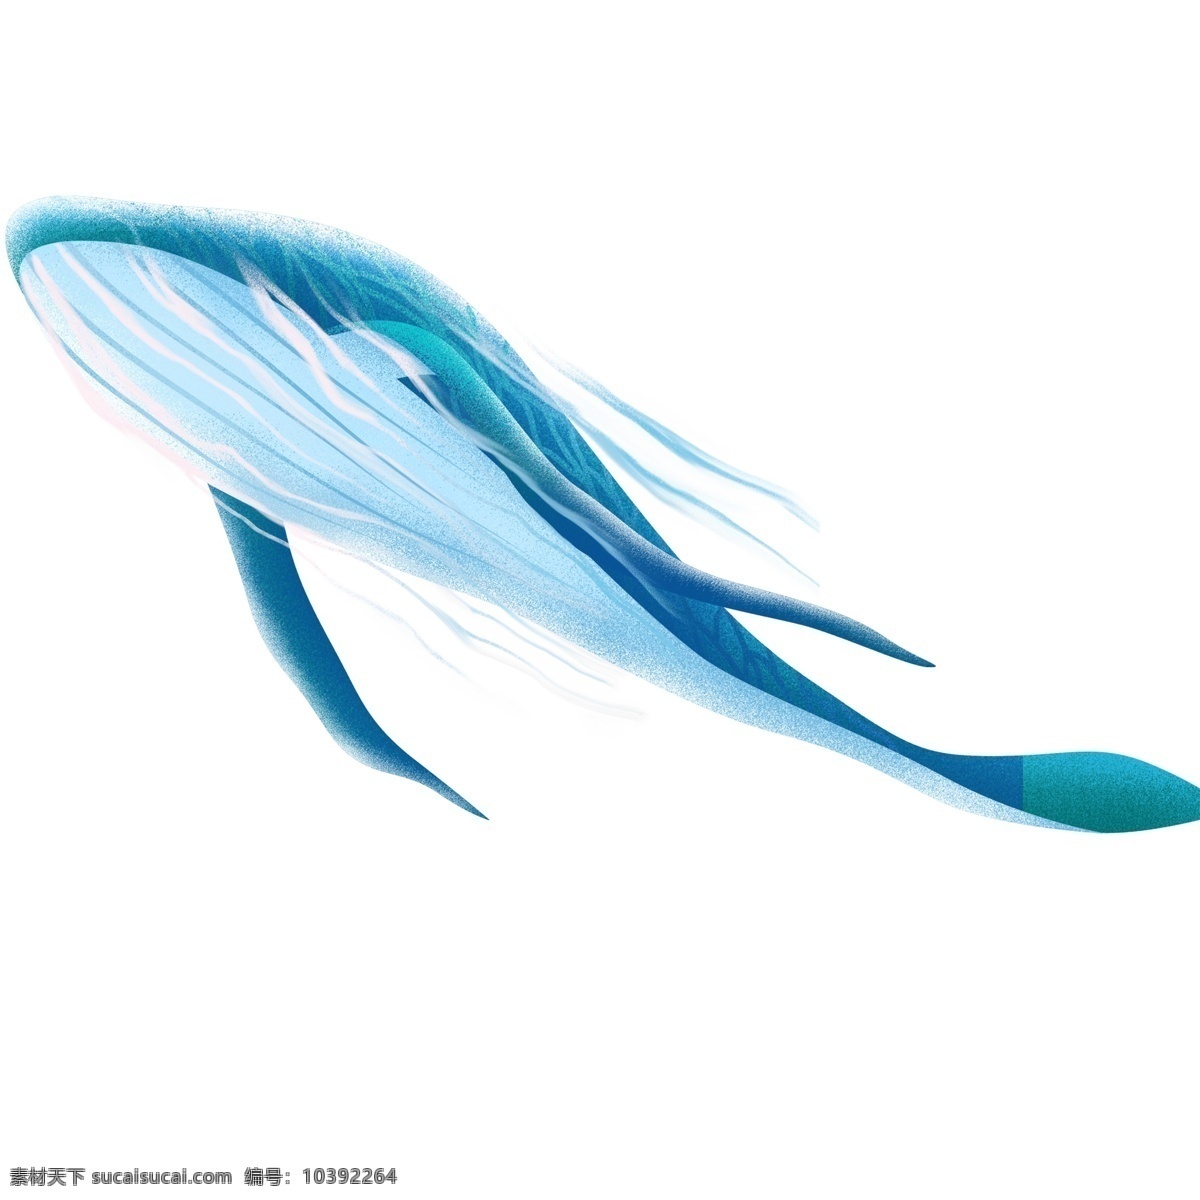 蓝色 深海 鲸鱼 插画 炫彩 卡通 彩色 小清新 创意 手绘 绘画元素 现代 简约 装饰 图案